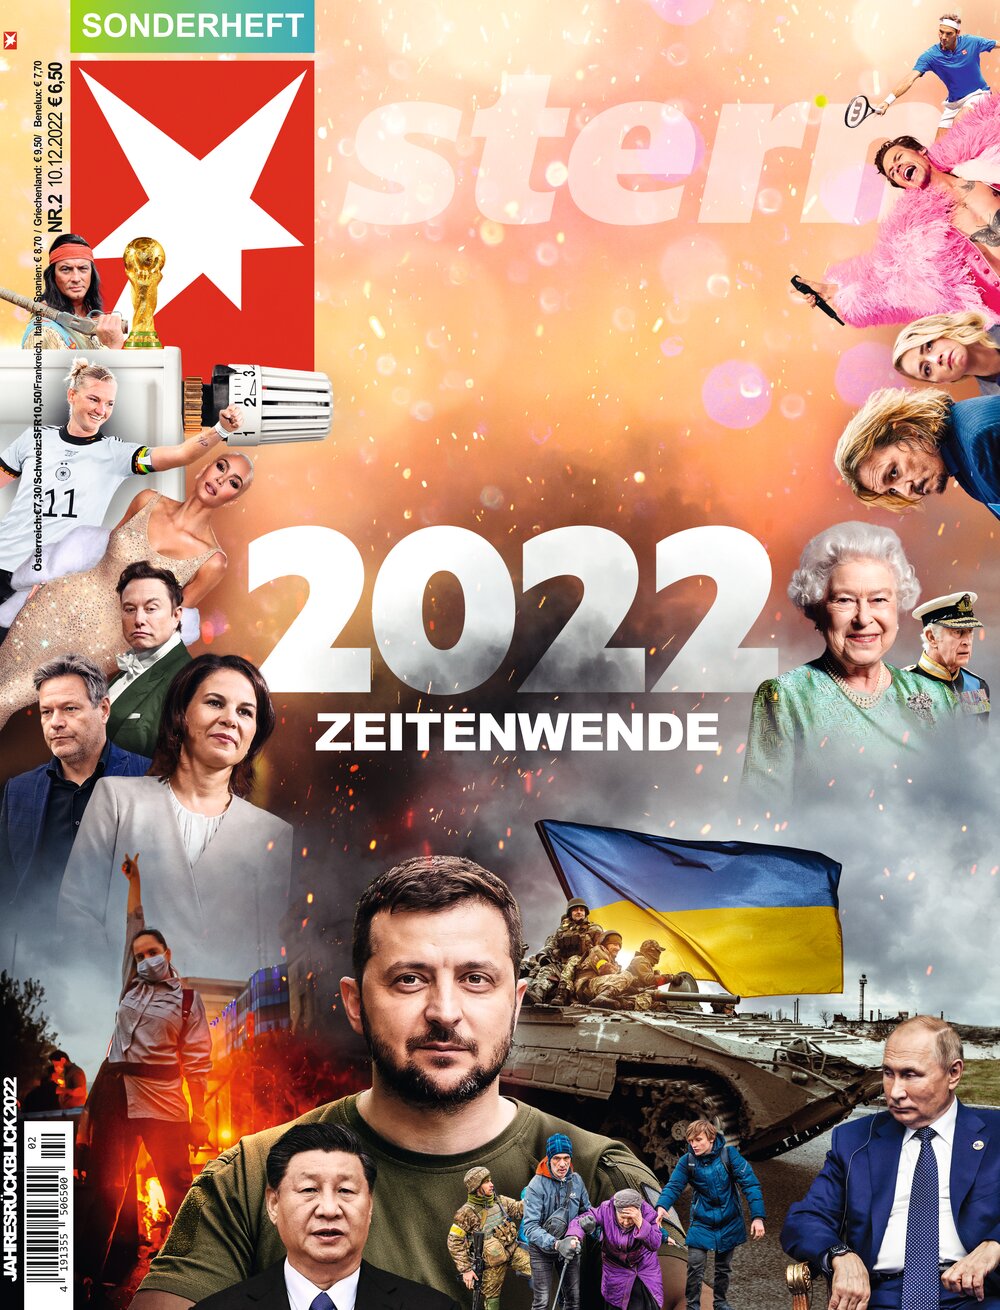 STERN Sonderheft ePaper 02/2022